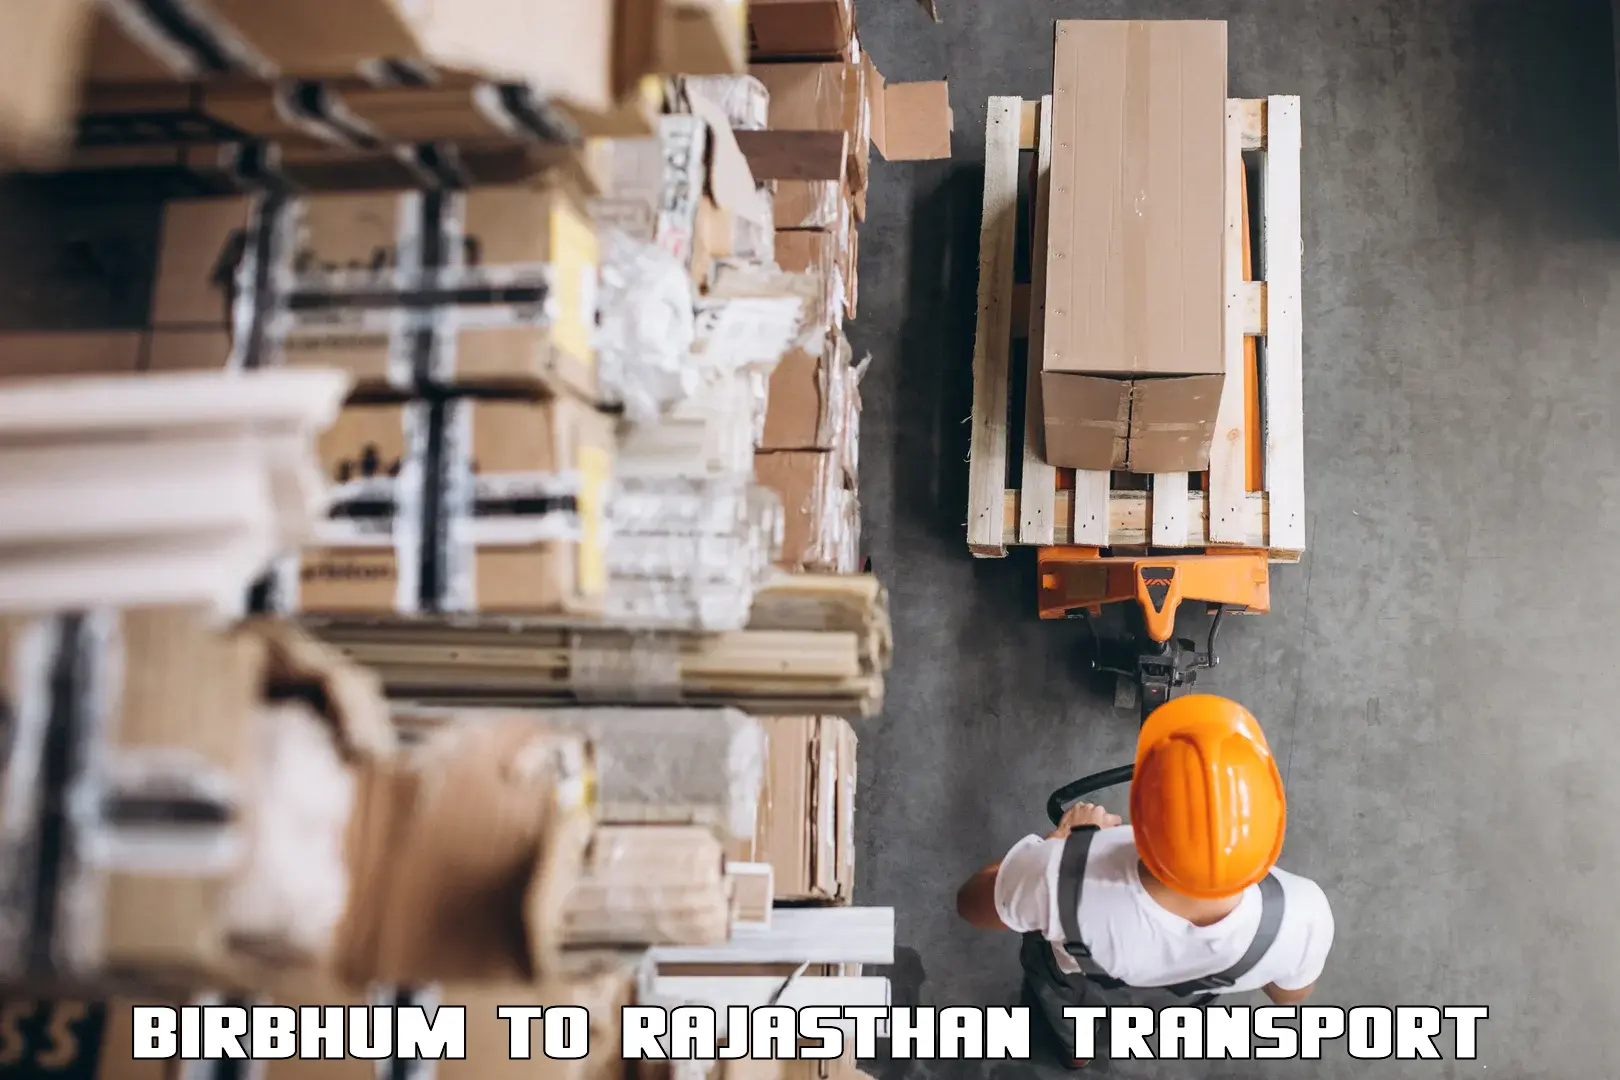 Online transport service Birbhum to Jaisalmer